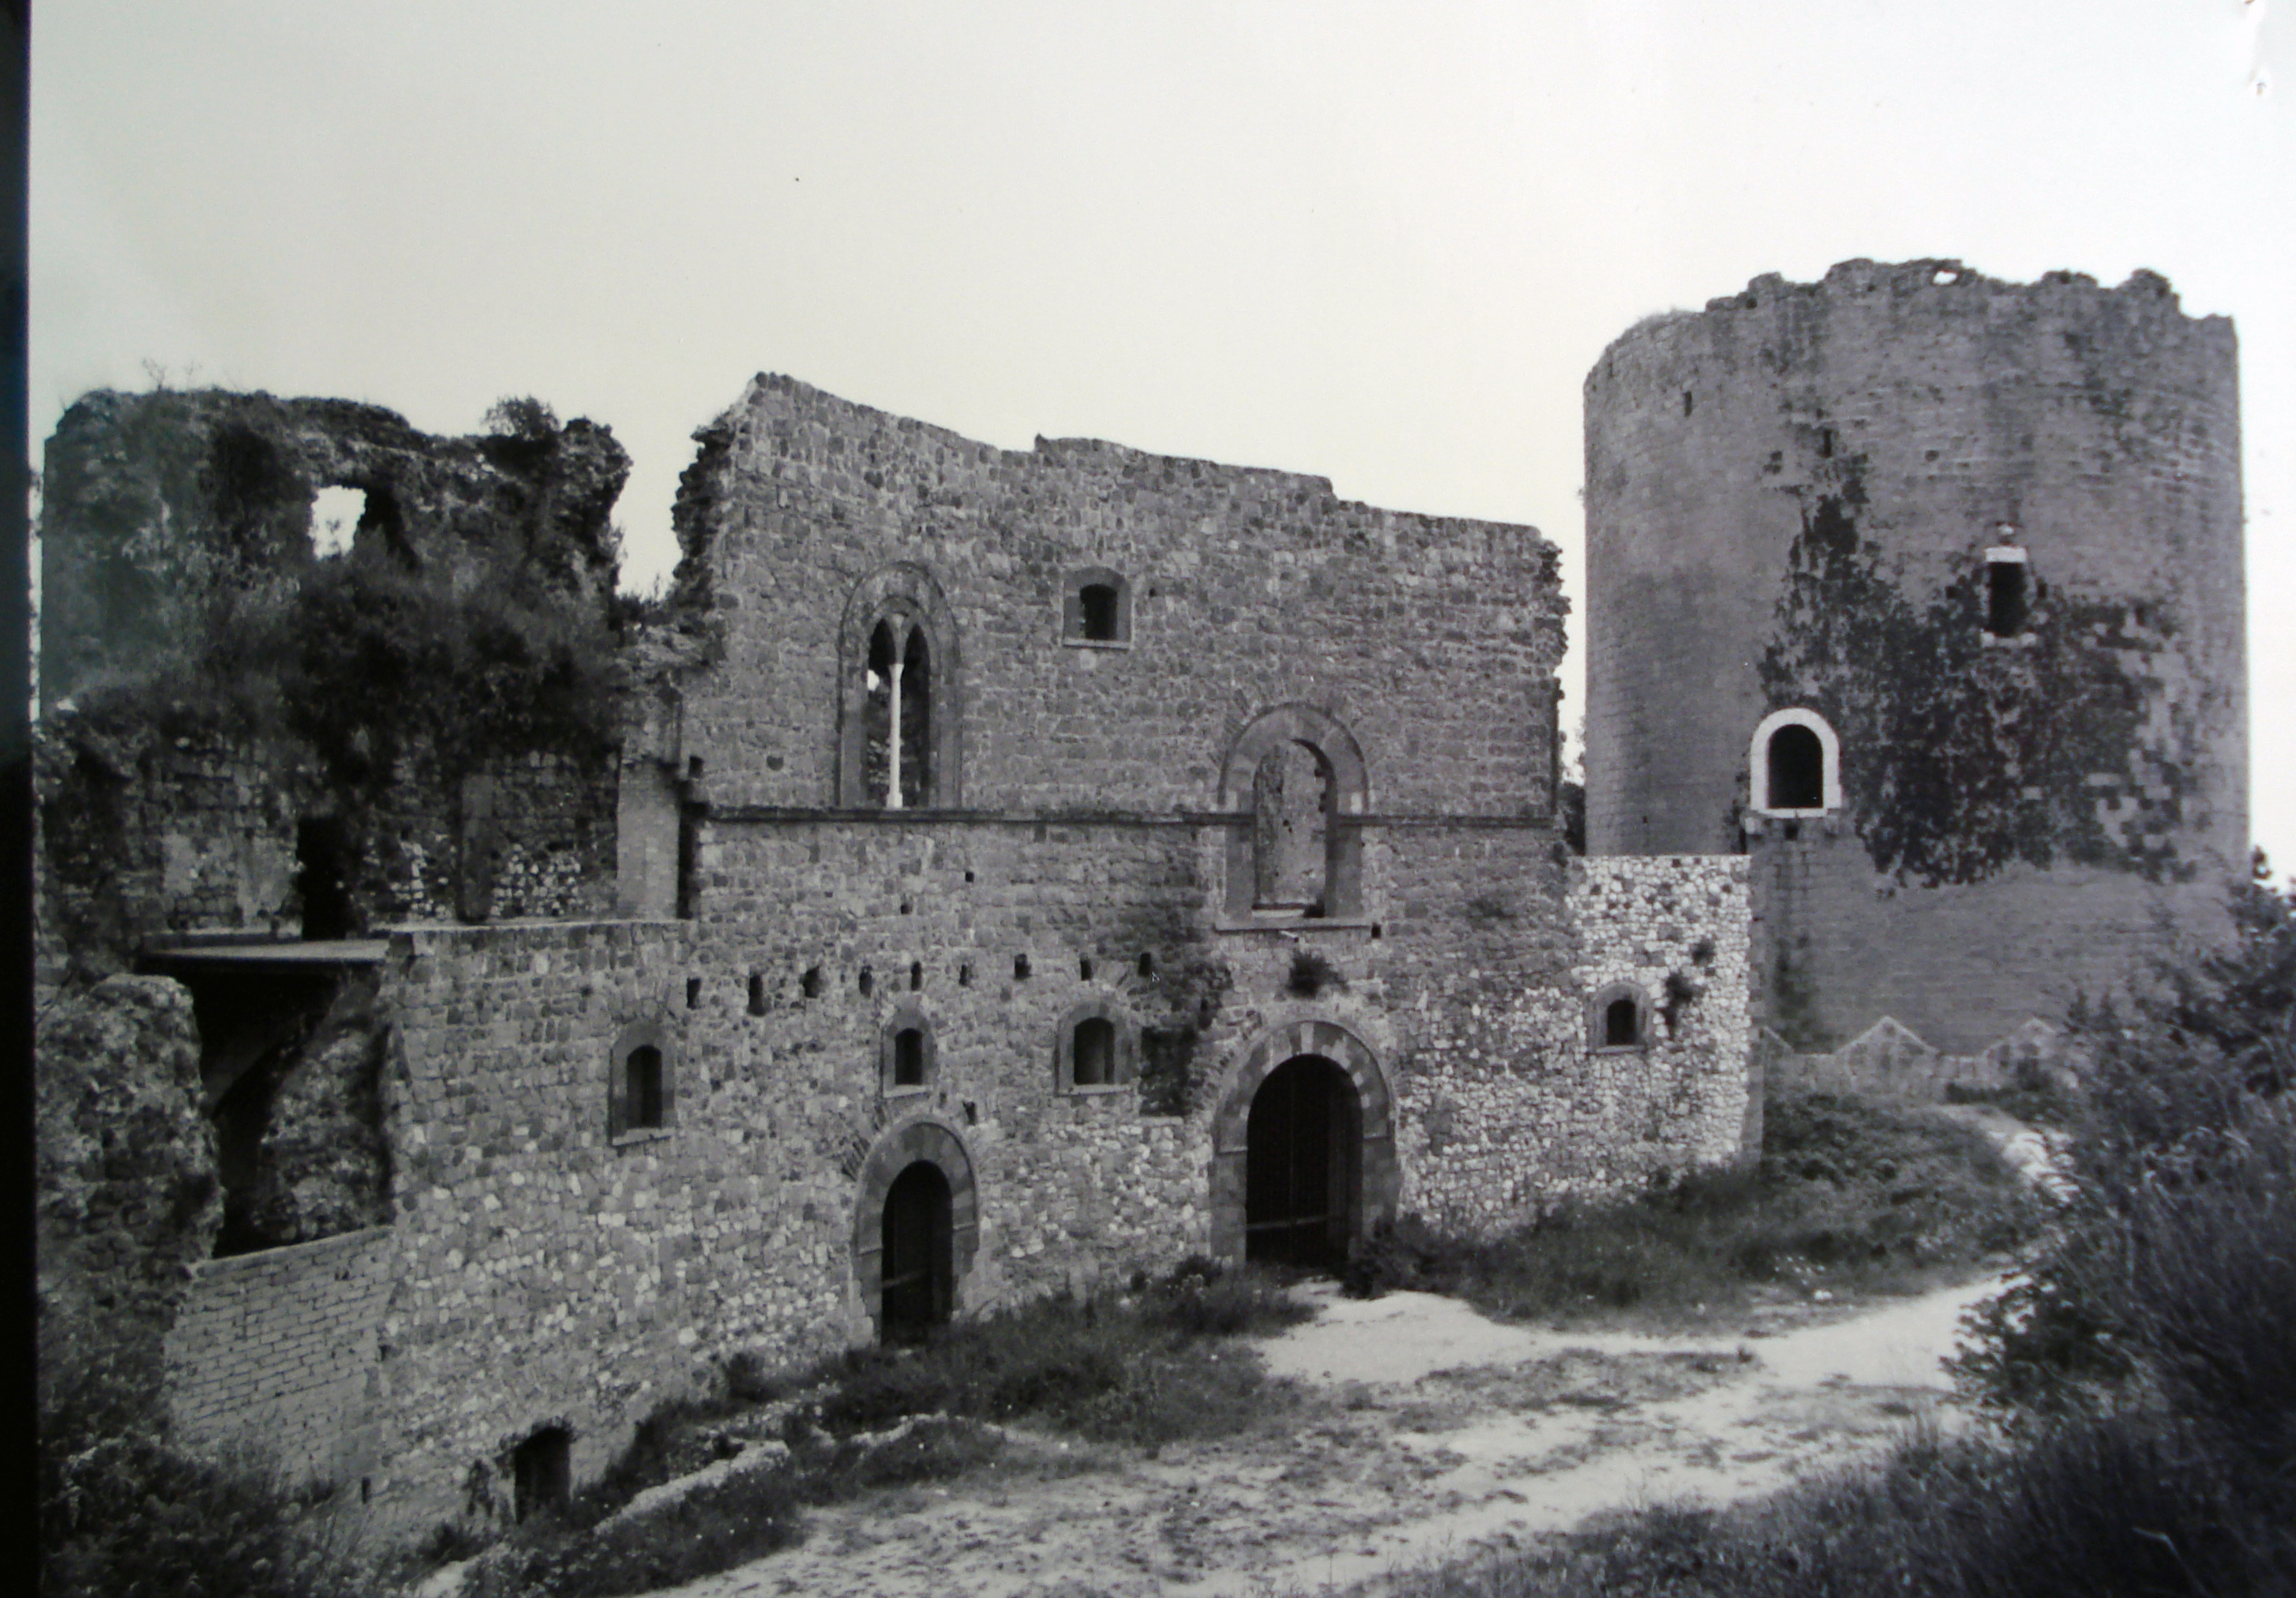 Castello e torre medioevale (castello) - Caserta (CE)  (IX)